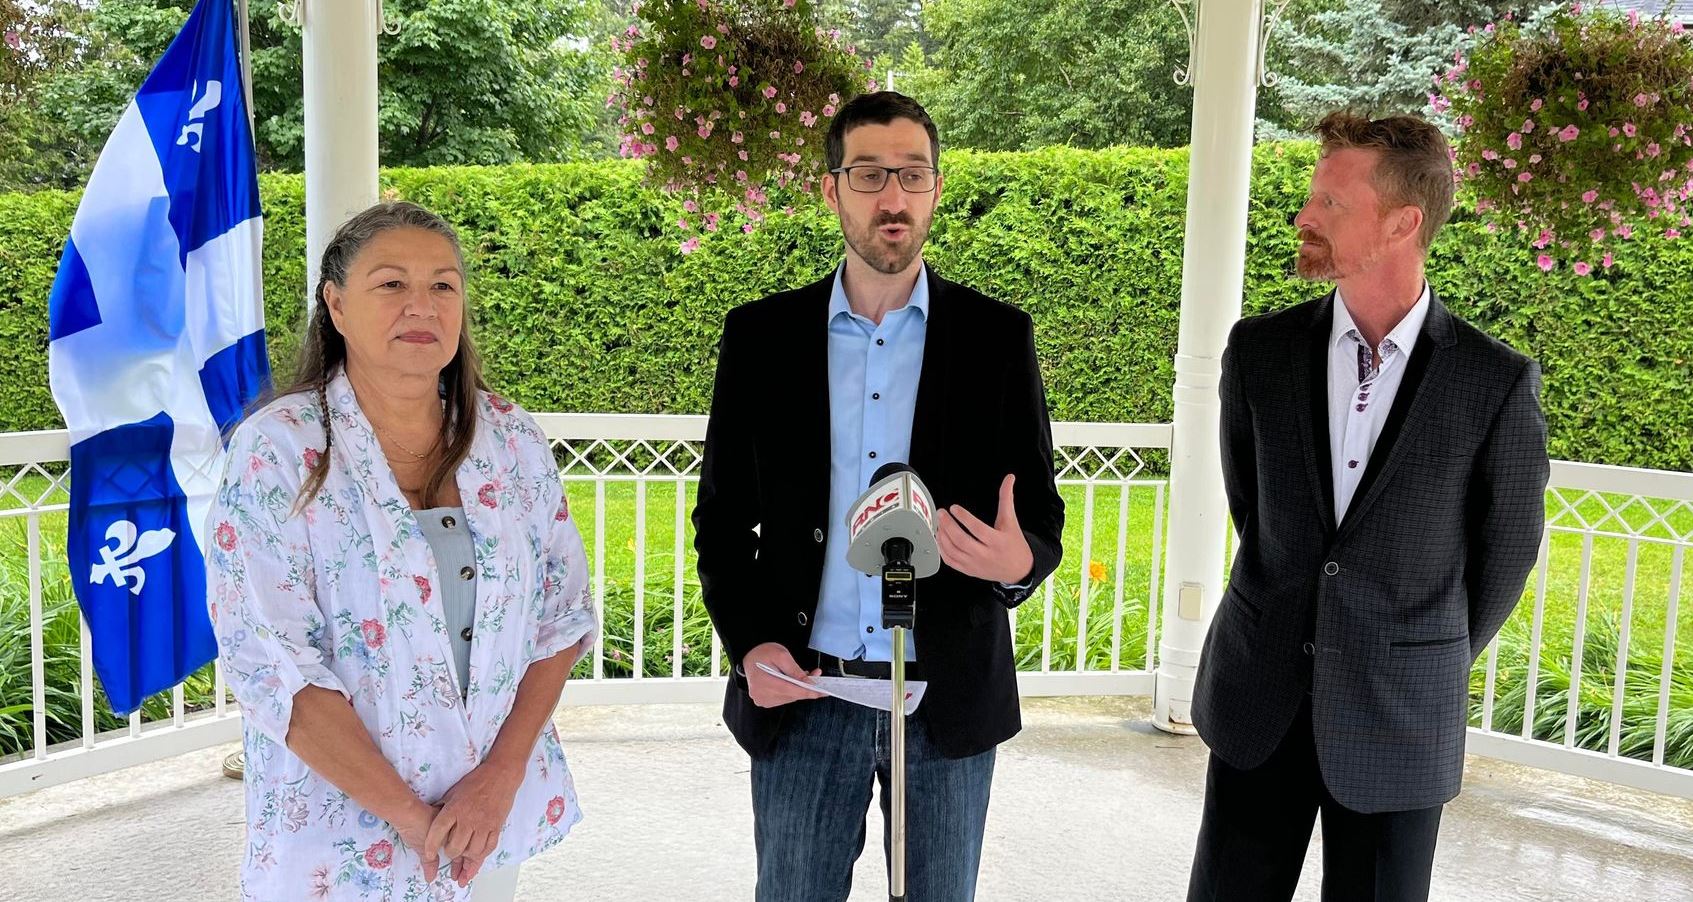 Jacline Rouleau, Jean-François Vachon et Samuel Doré, candidats du PQ pour octobre